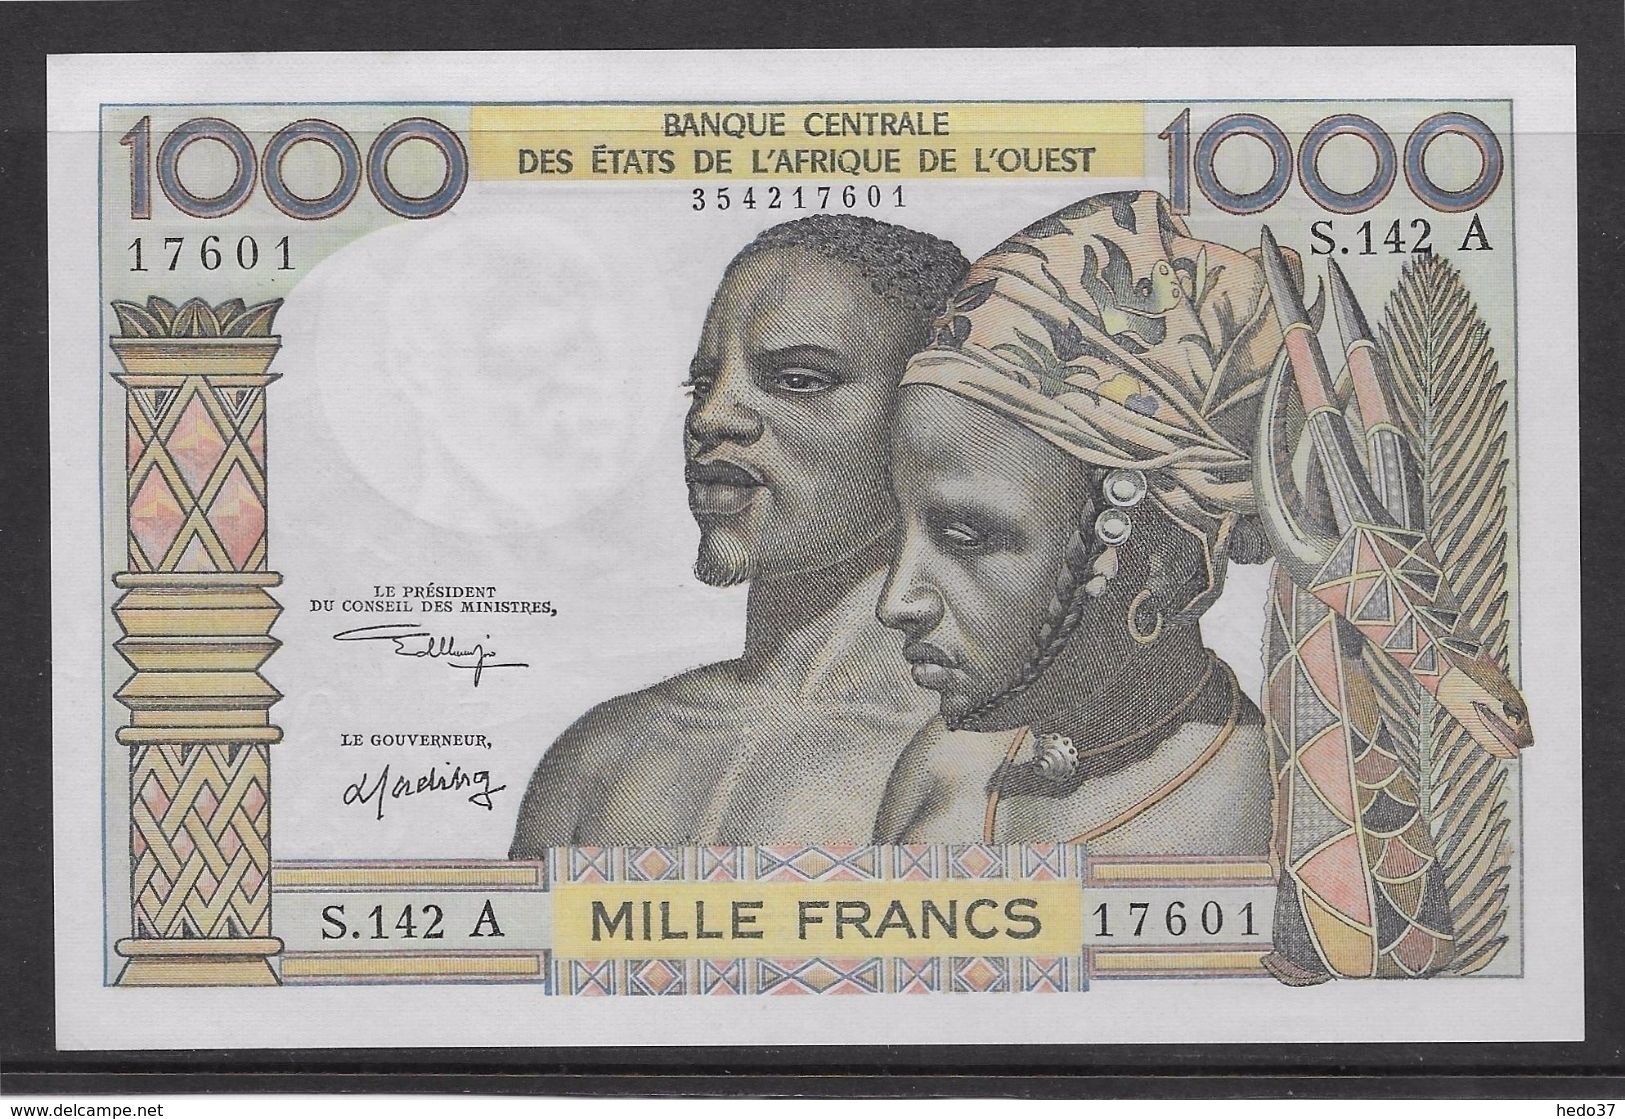 Côte D'Ivoire - 1000 Francs - 1959/1965 Pick N°103Ak - Neuf - Côte D'Ivoire